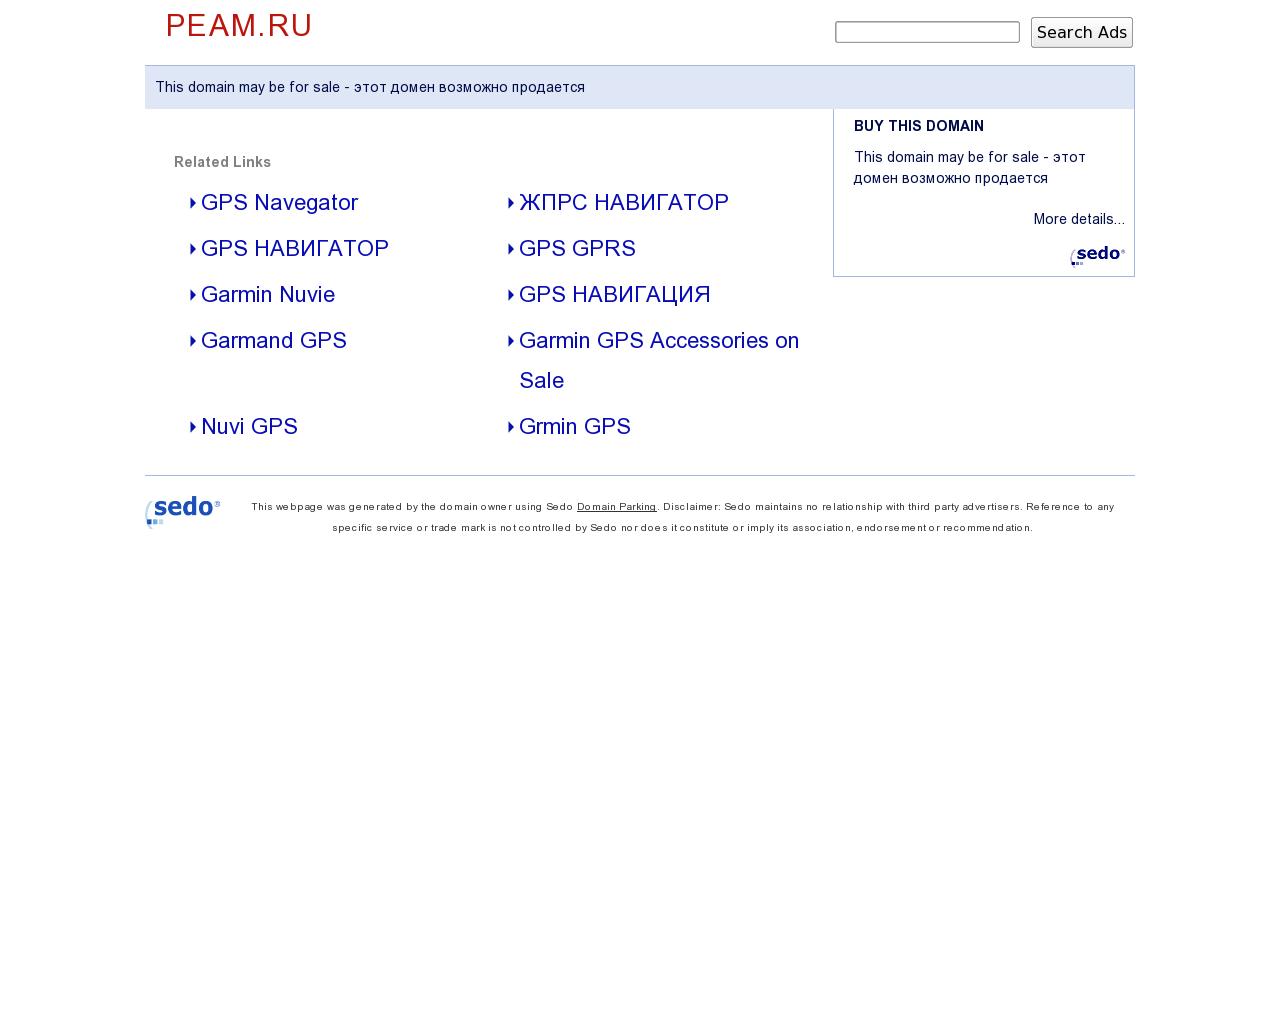 Изображение сайта peam.ru в разрешении 1280x1024